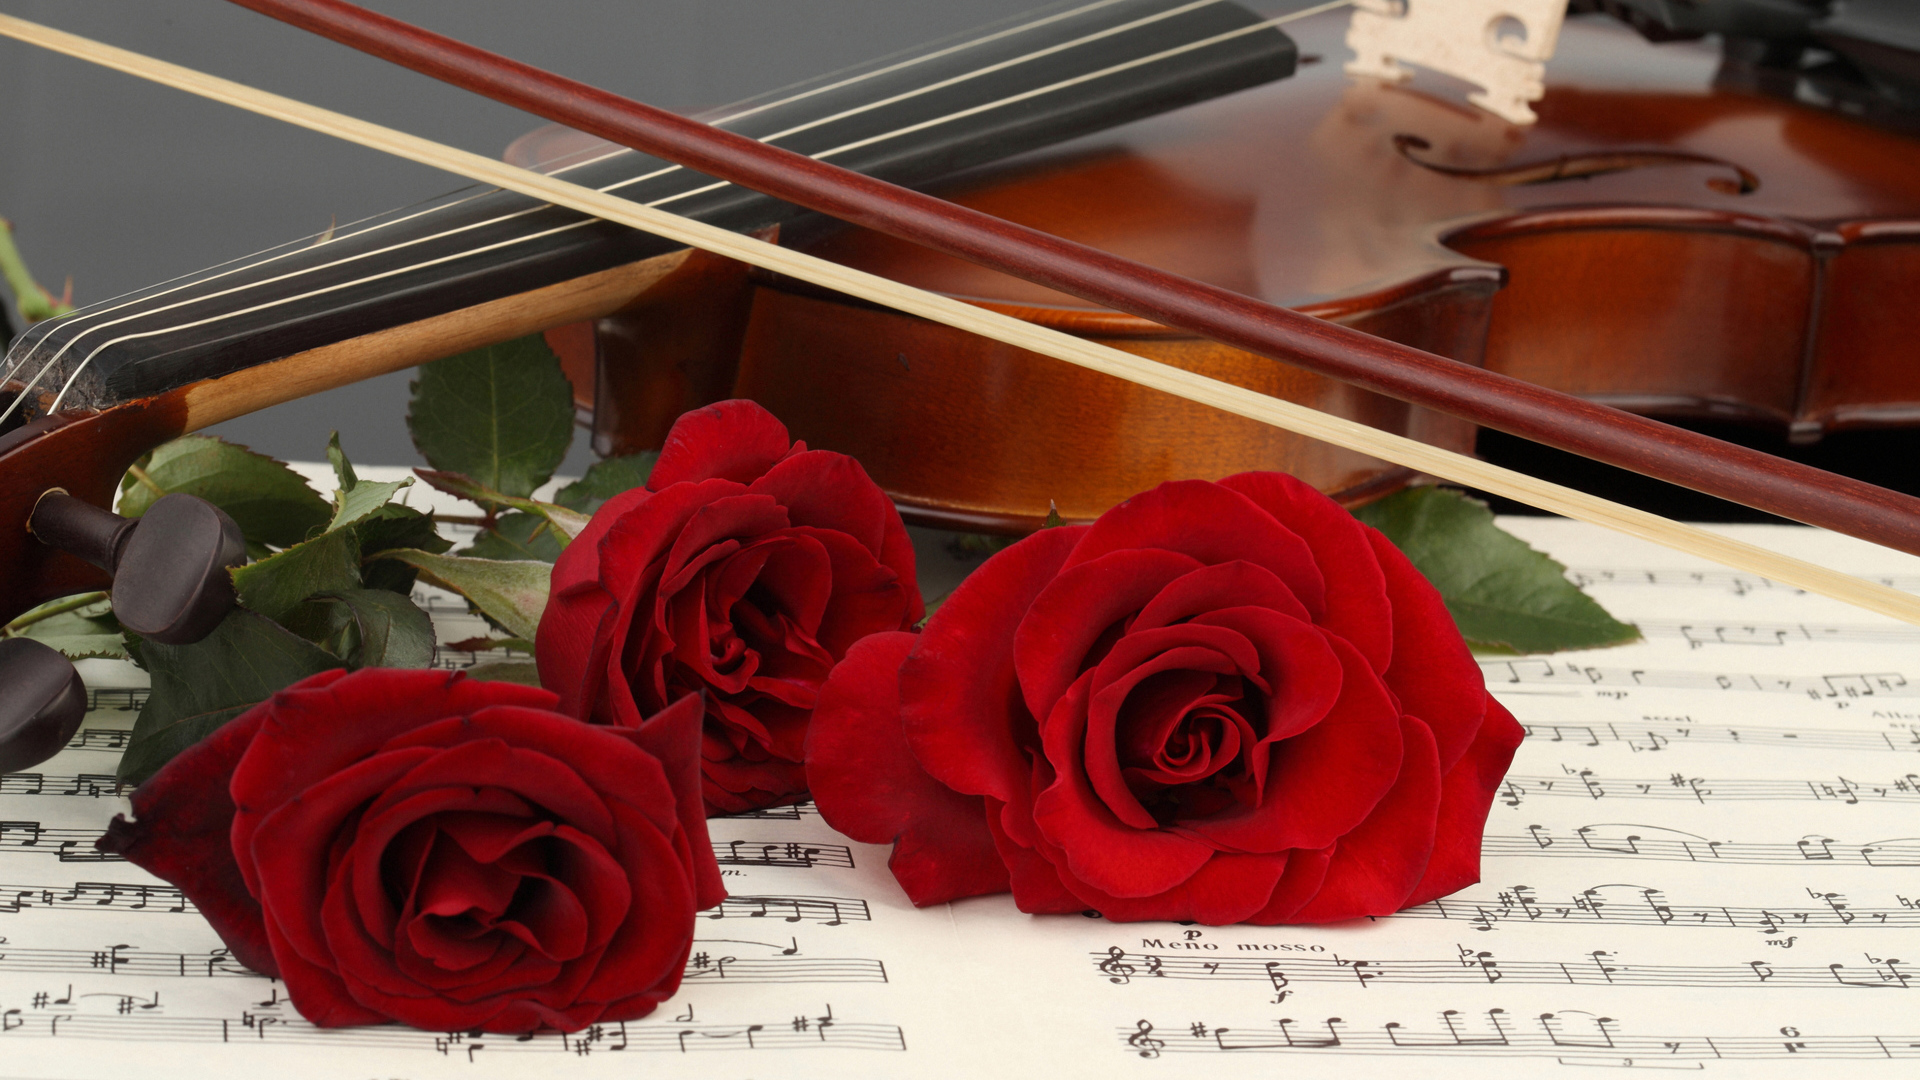 Три красные розы лежат на нотной тетради со скрипкой